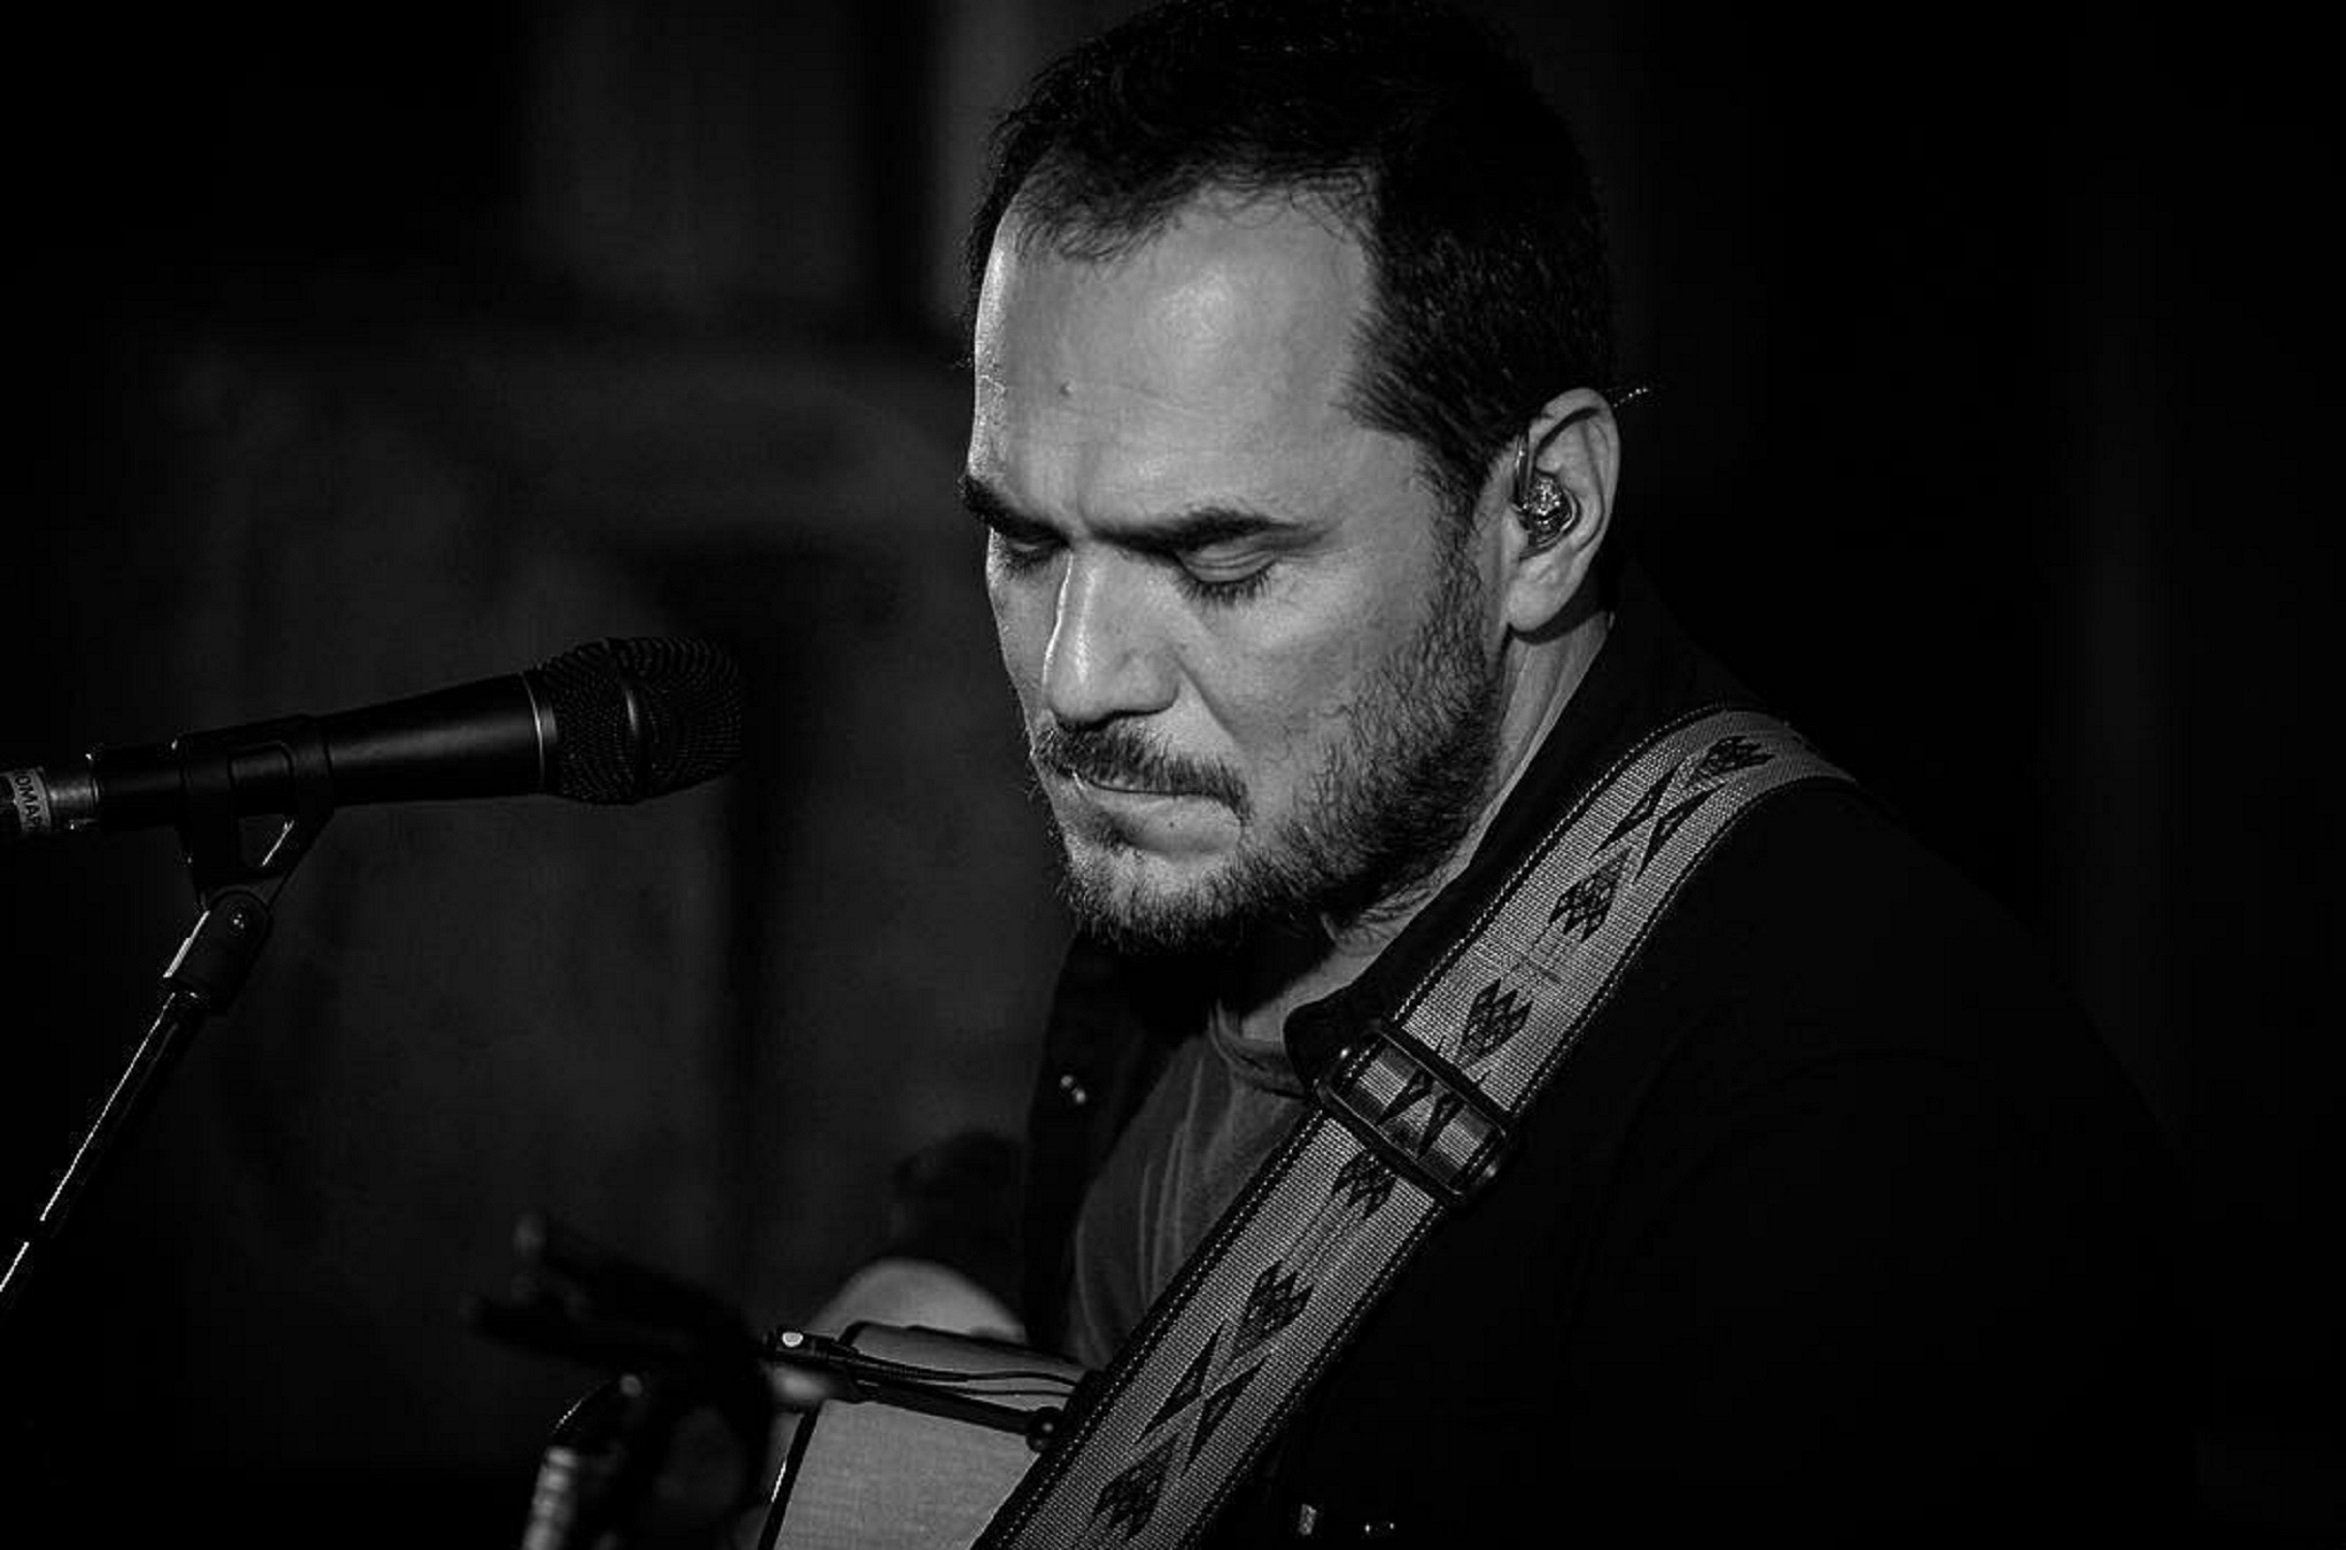 "Llibertat presos polítics!": Ismael Serrano atura un concert en sentir-ho